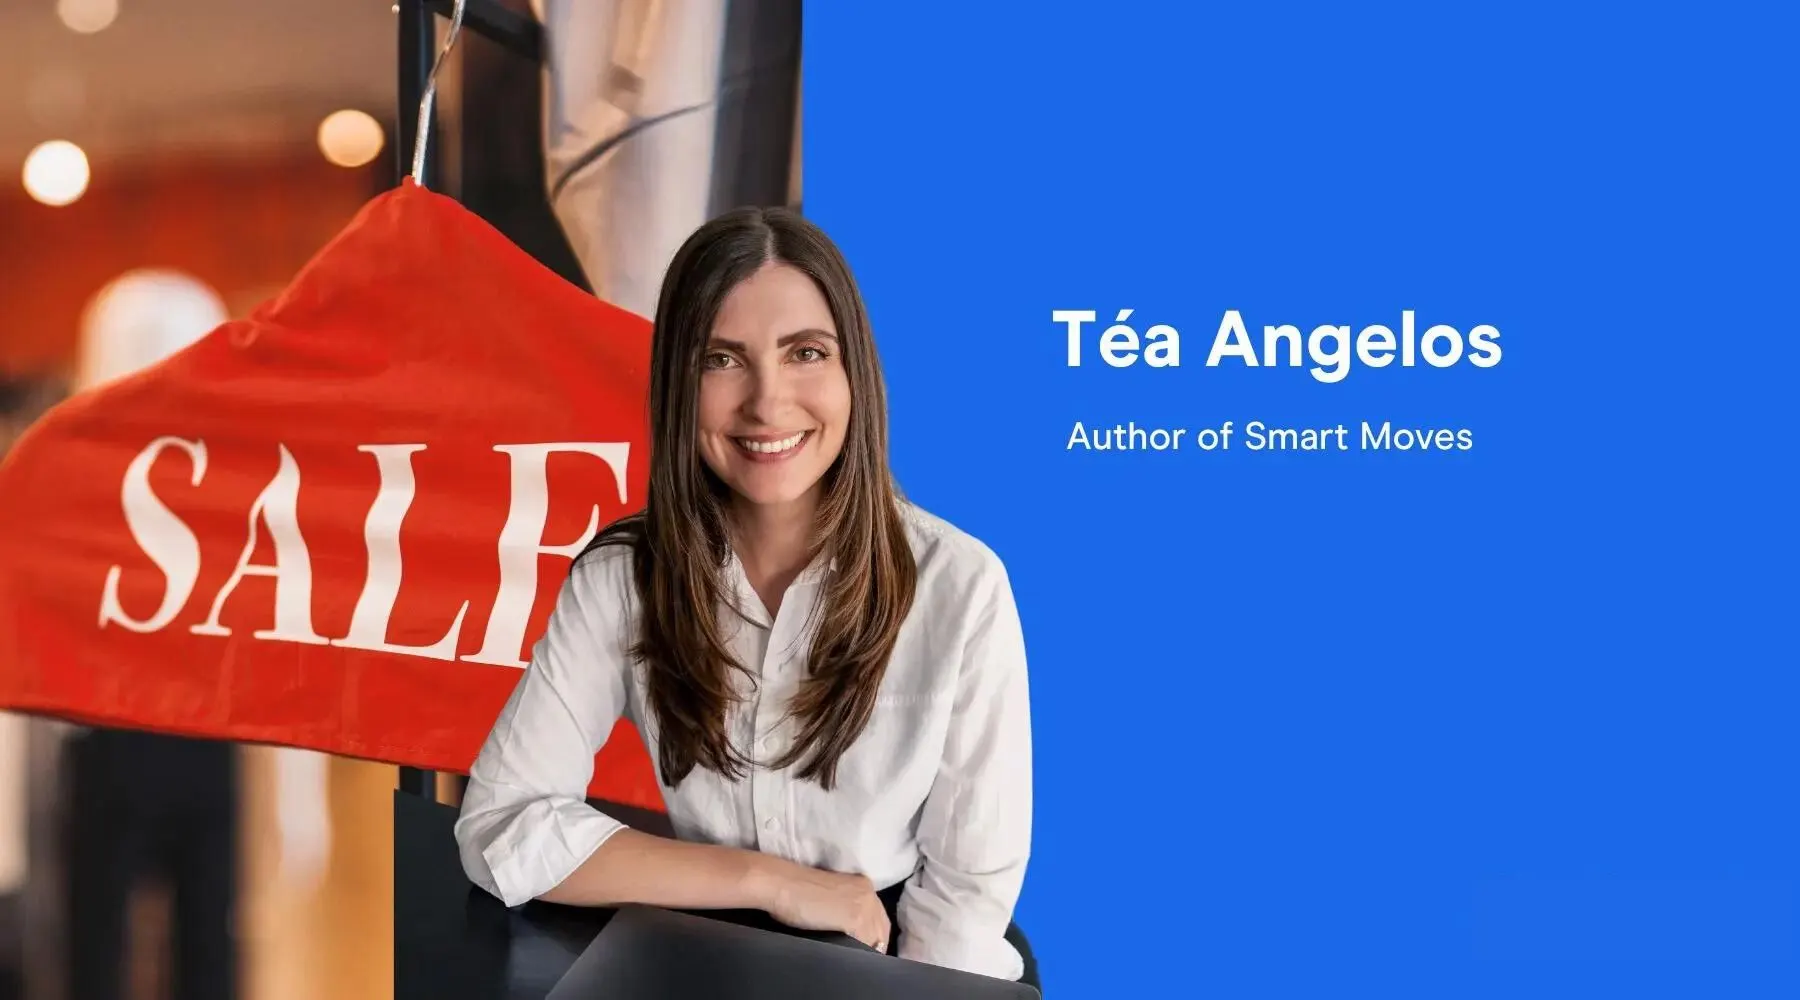 Tea Angelos